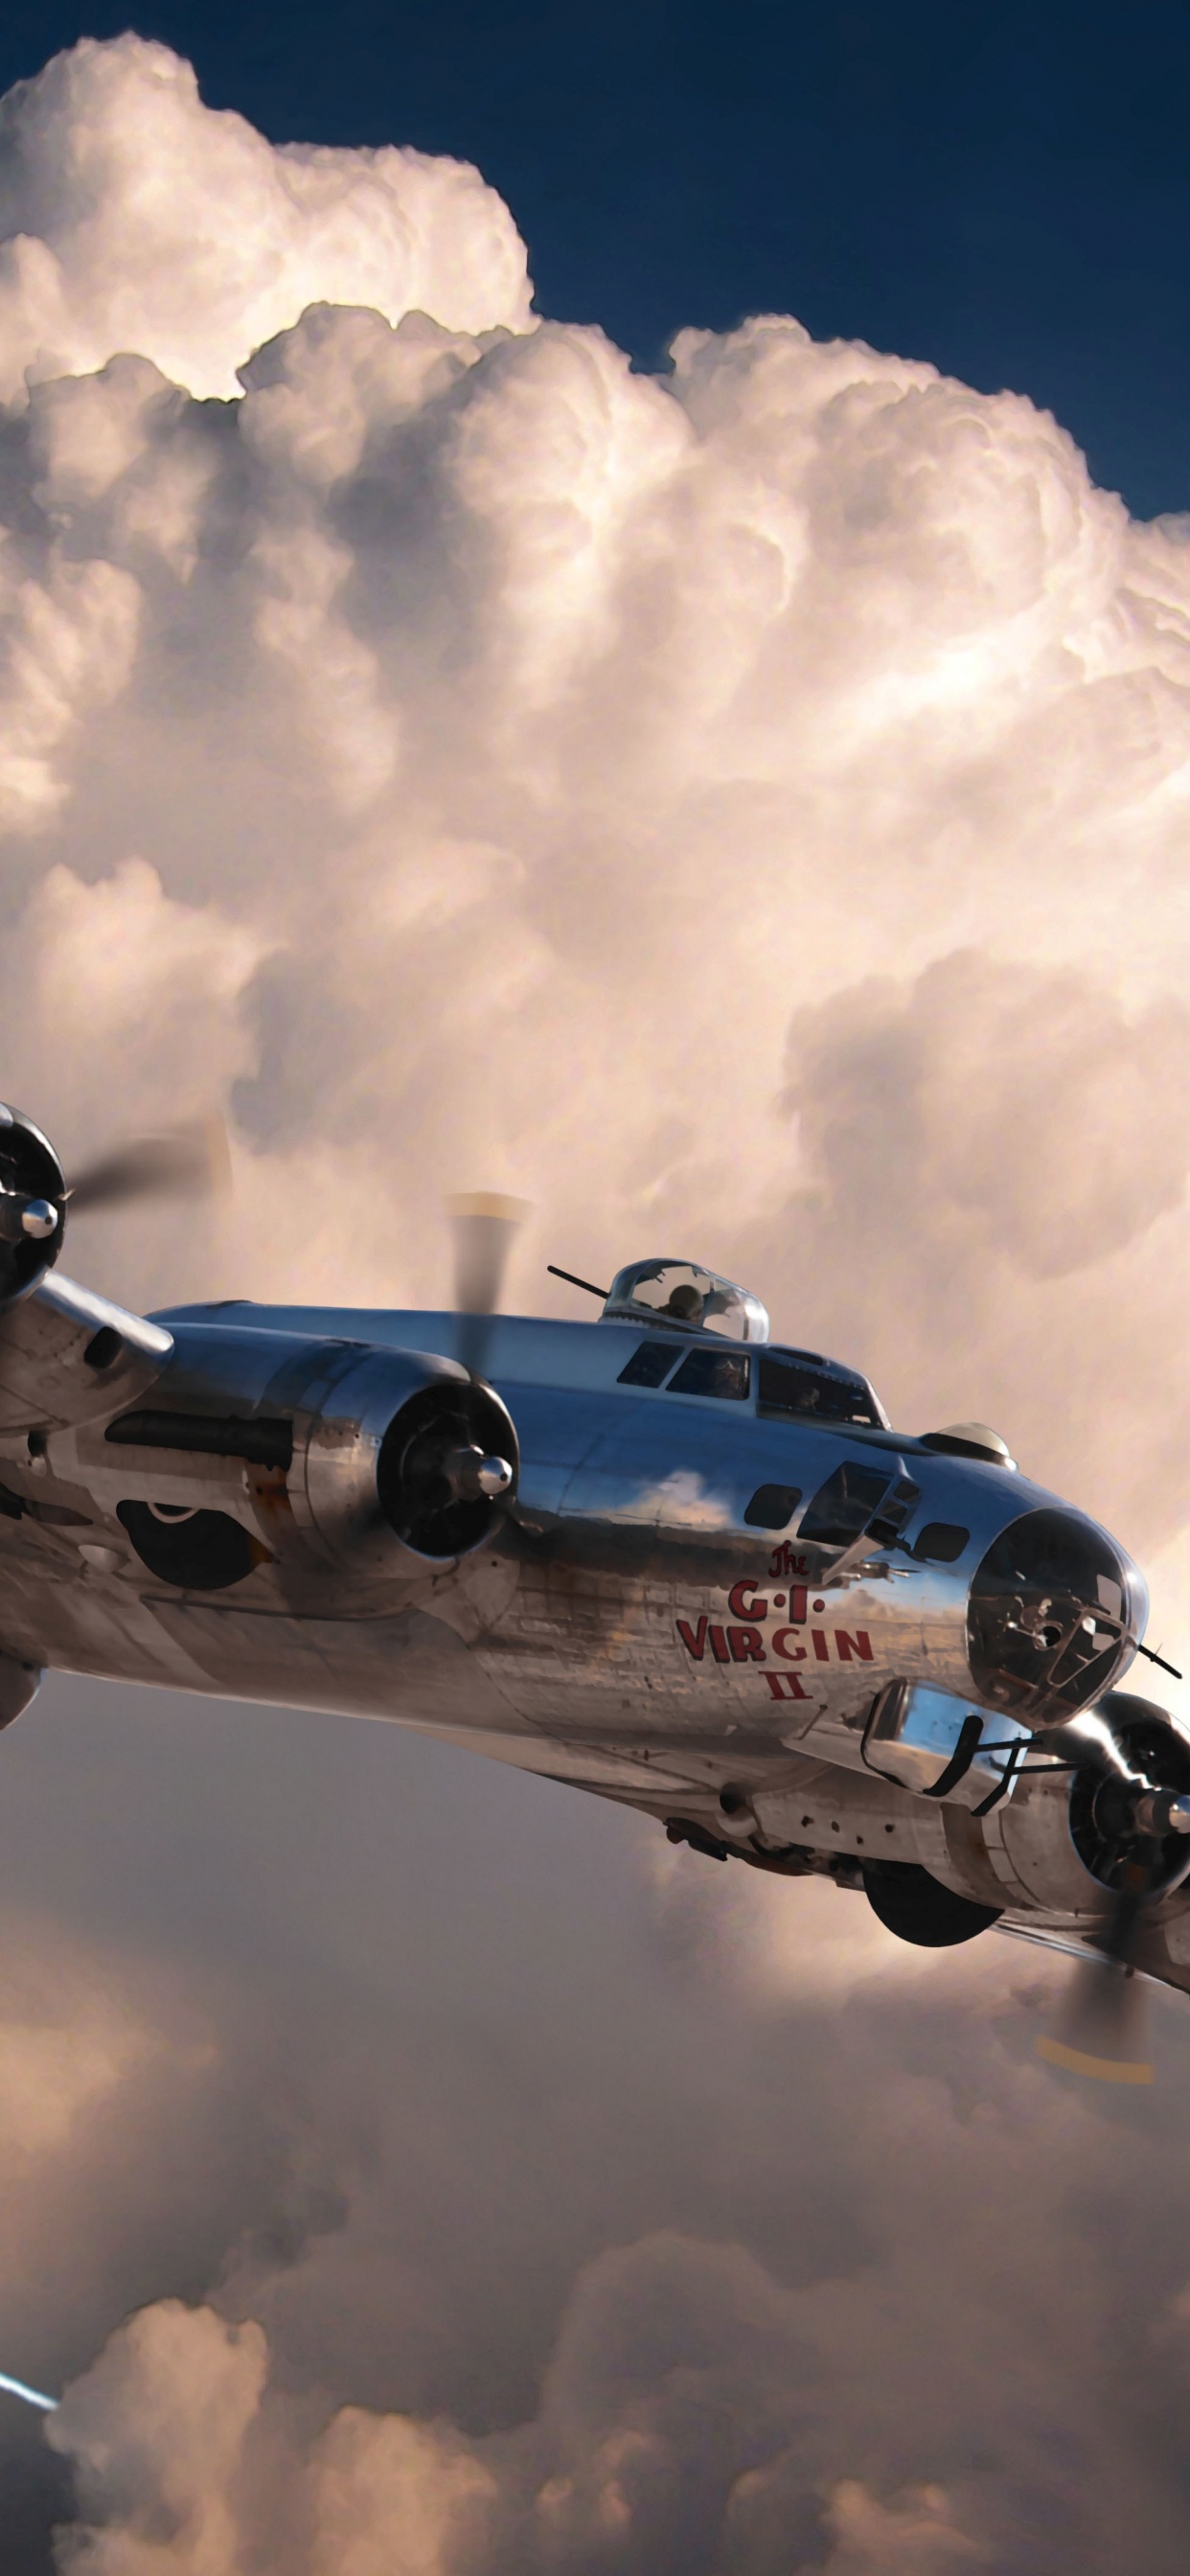 Blaues Und Weißes Flugzeug Unter Weißen Wolken Und Blauem Himmel Tagsüber. Wallpaper in 1242x2688 Resolution